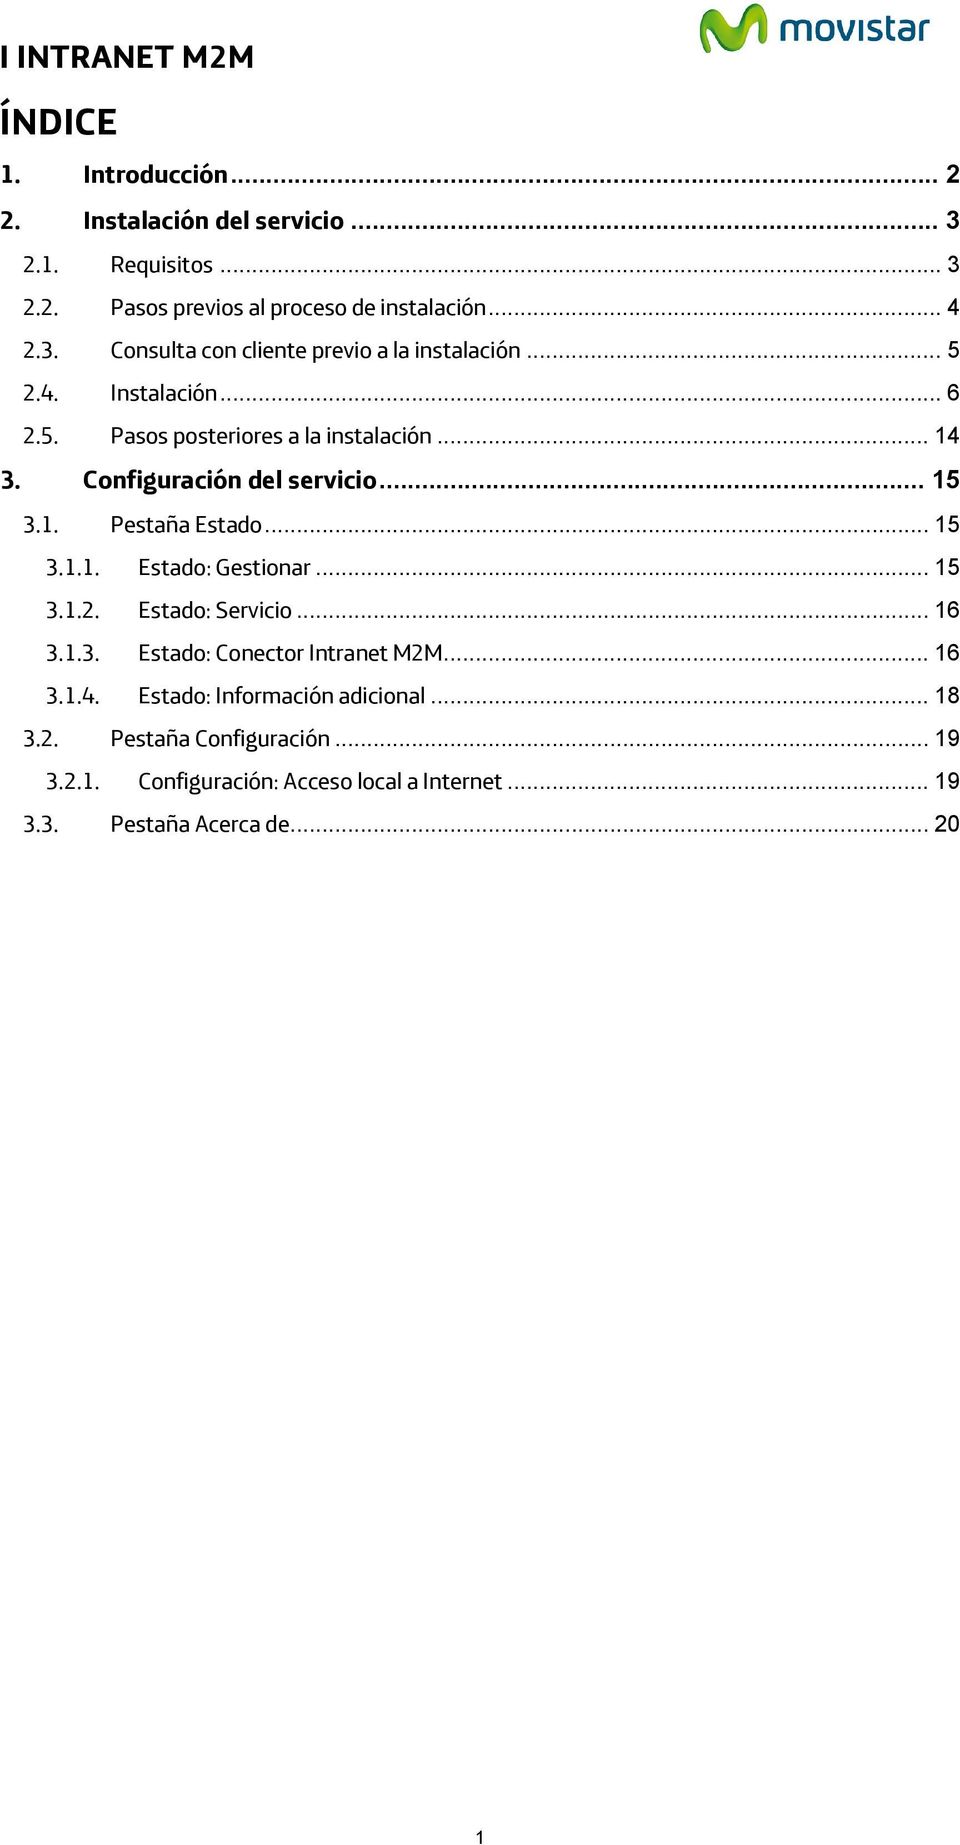 .. 15 3.1.2. Estado: Servicio... 16 3.1.3. Estado: Conector Intranet M2M... 16 3.1.4. Estado: Información adicional... 18 3.2. Pestaña Configuración.